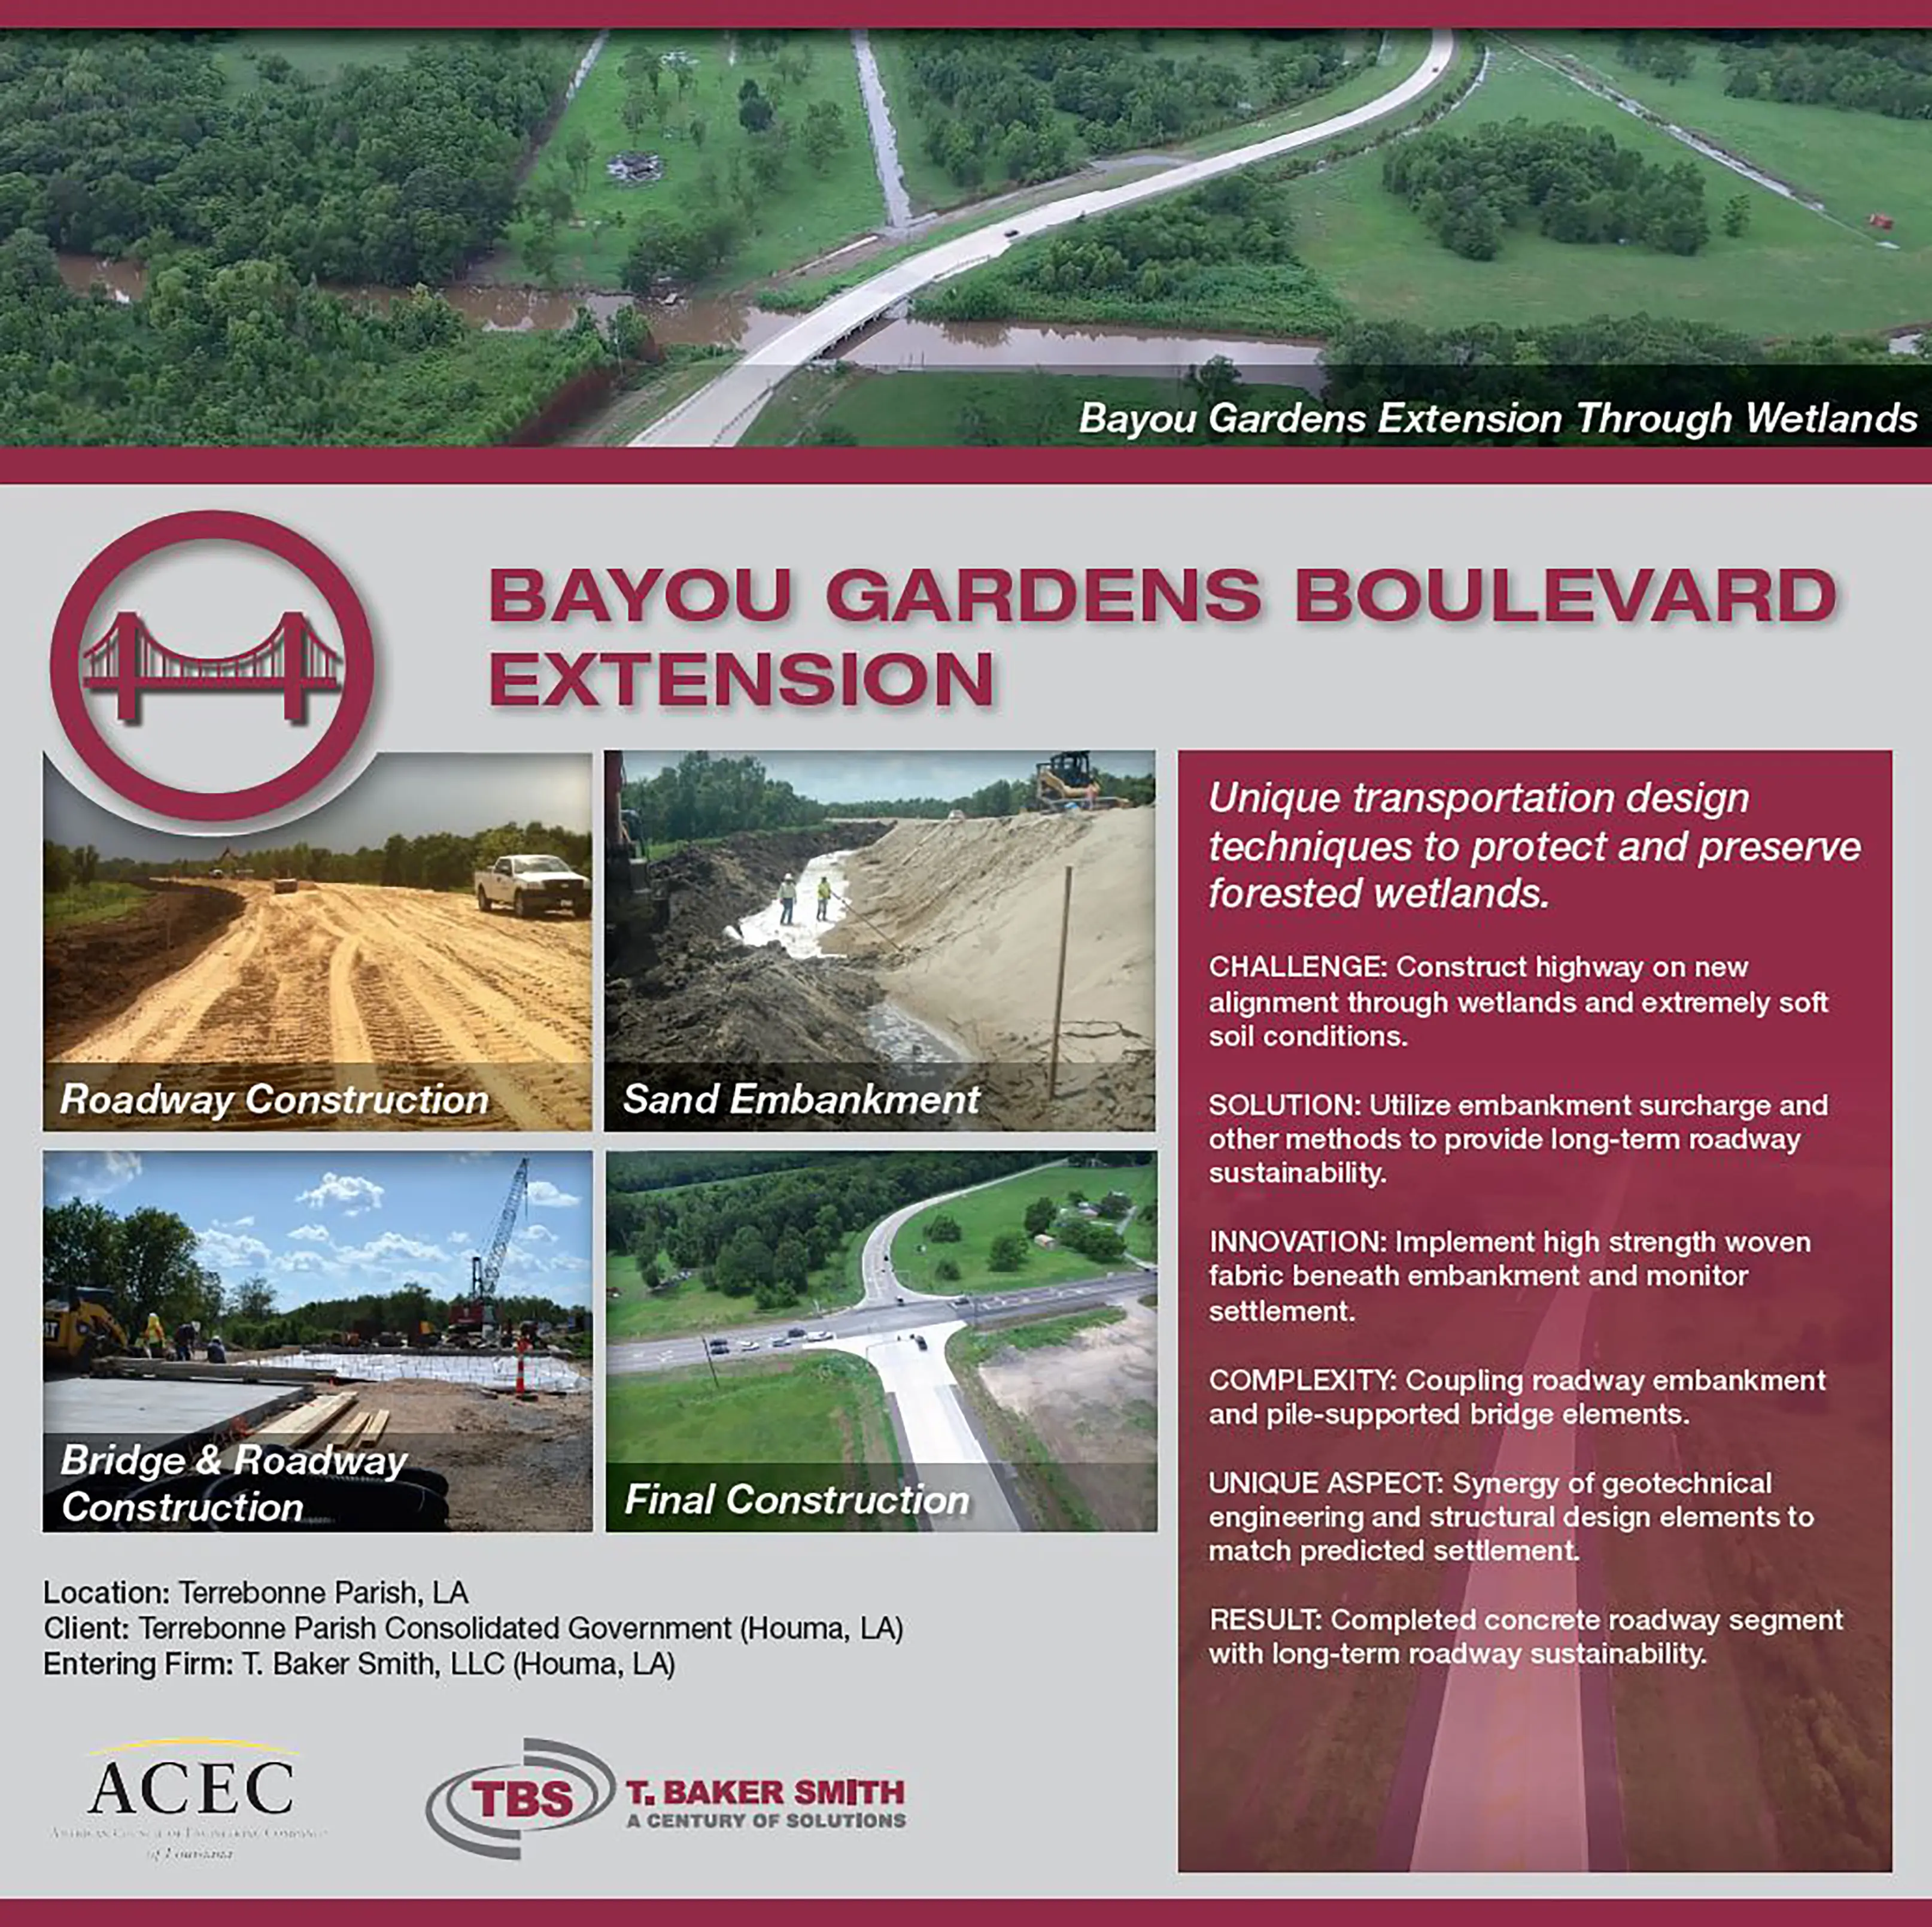 Bayou Gardens Extension